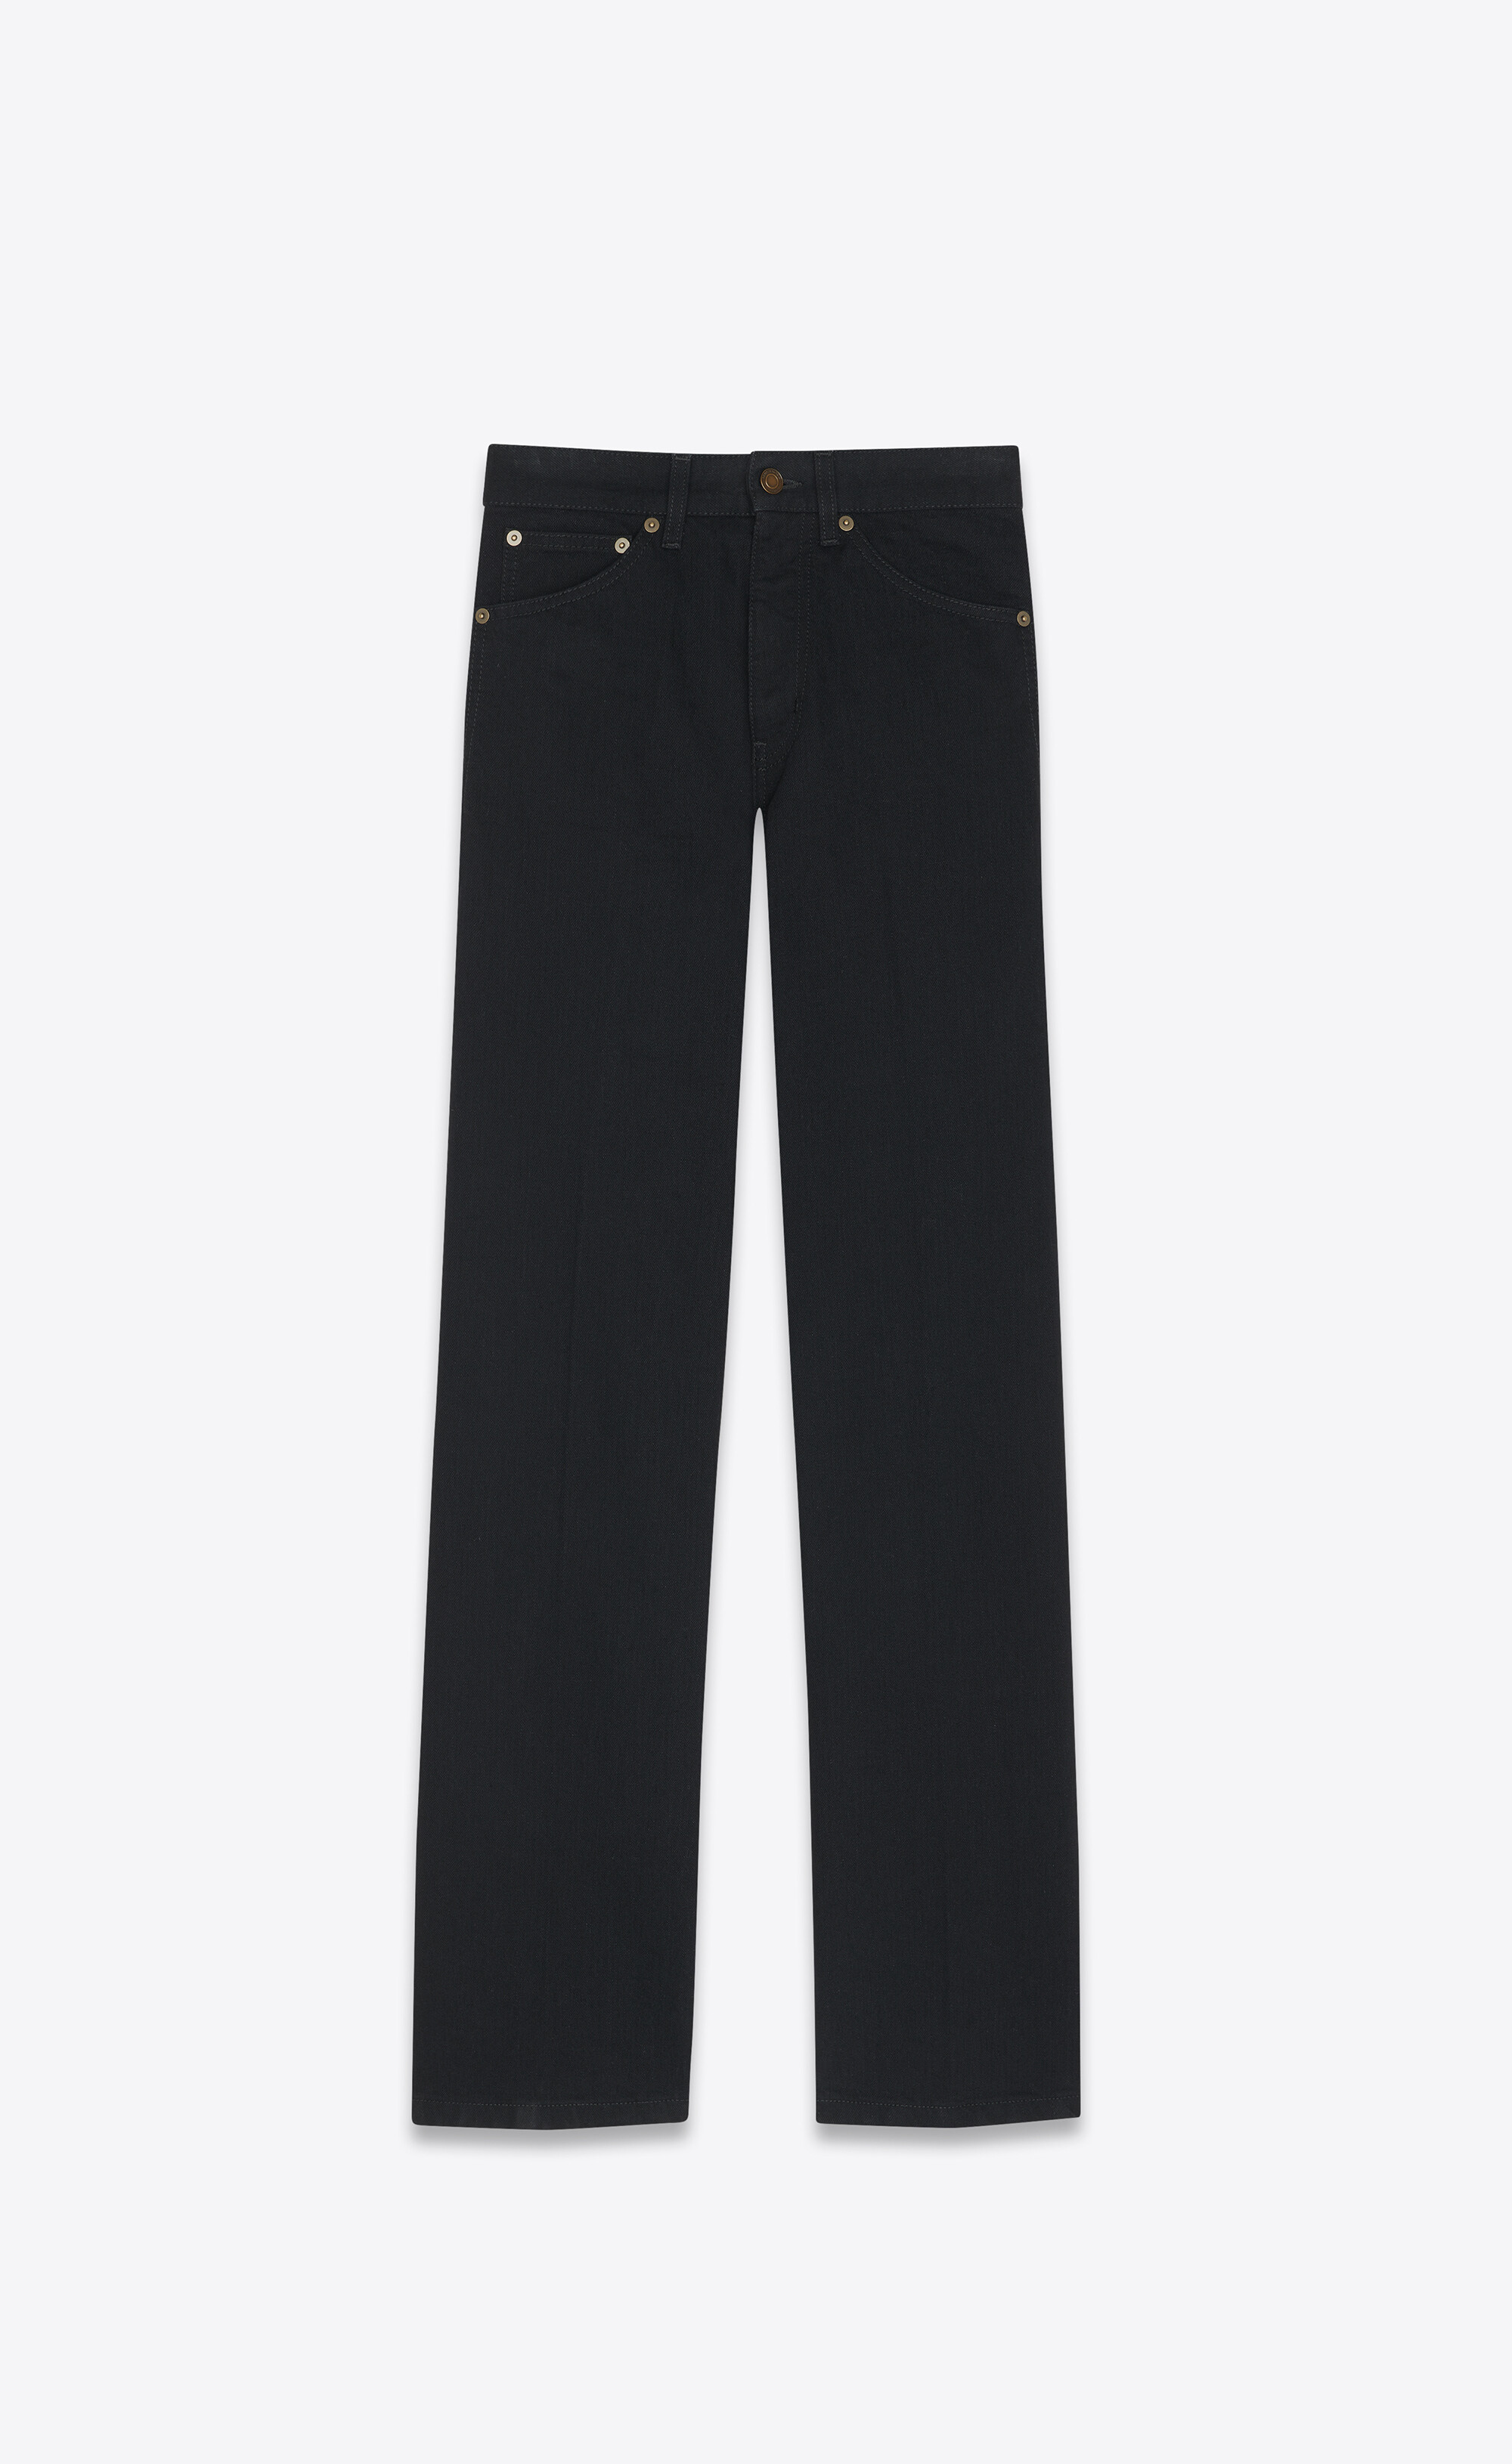 Saint Laurent Baumwolle High-Rise Jeans Clyde in Schwarz für Herren Herren Bekleidung Jeans Jeans mit Gerader Passform 